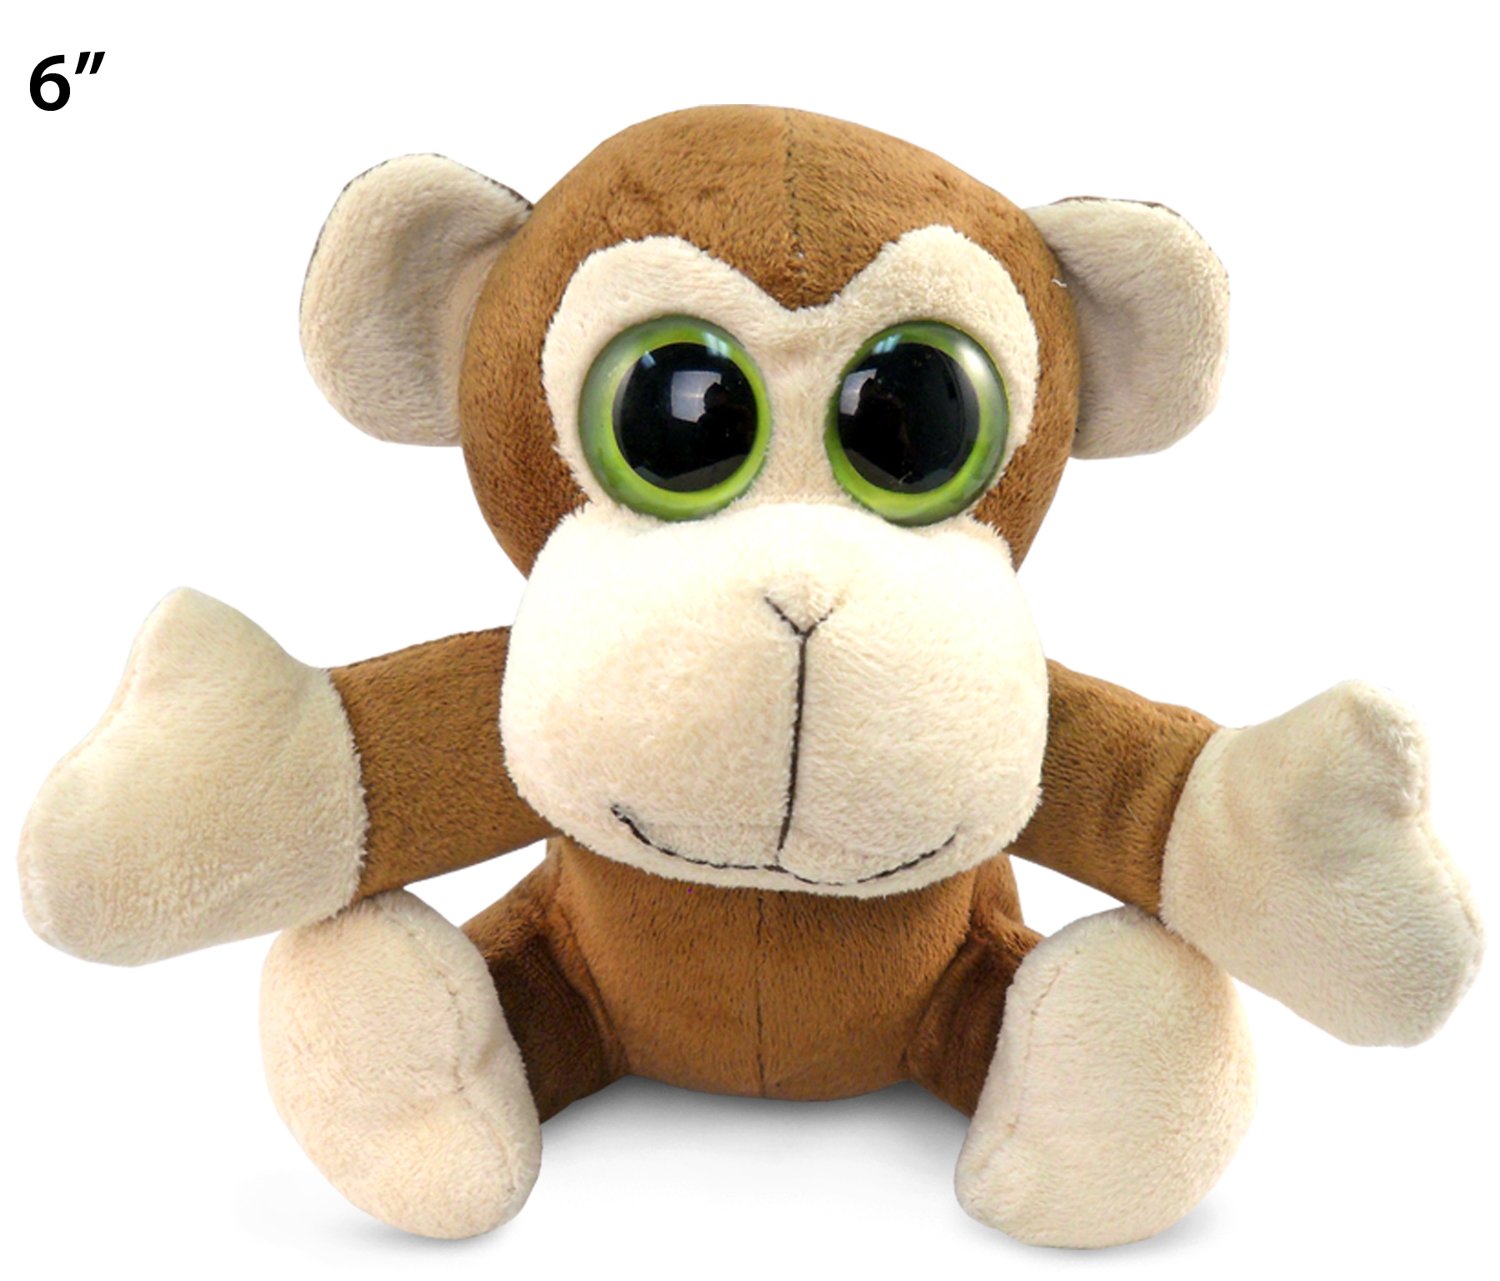 giant monkey stuffed animal